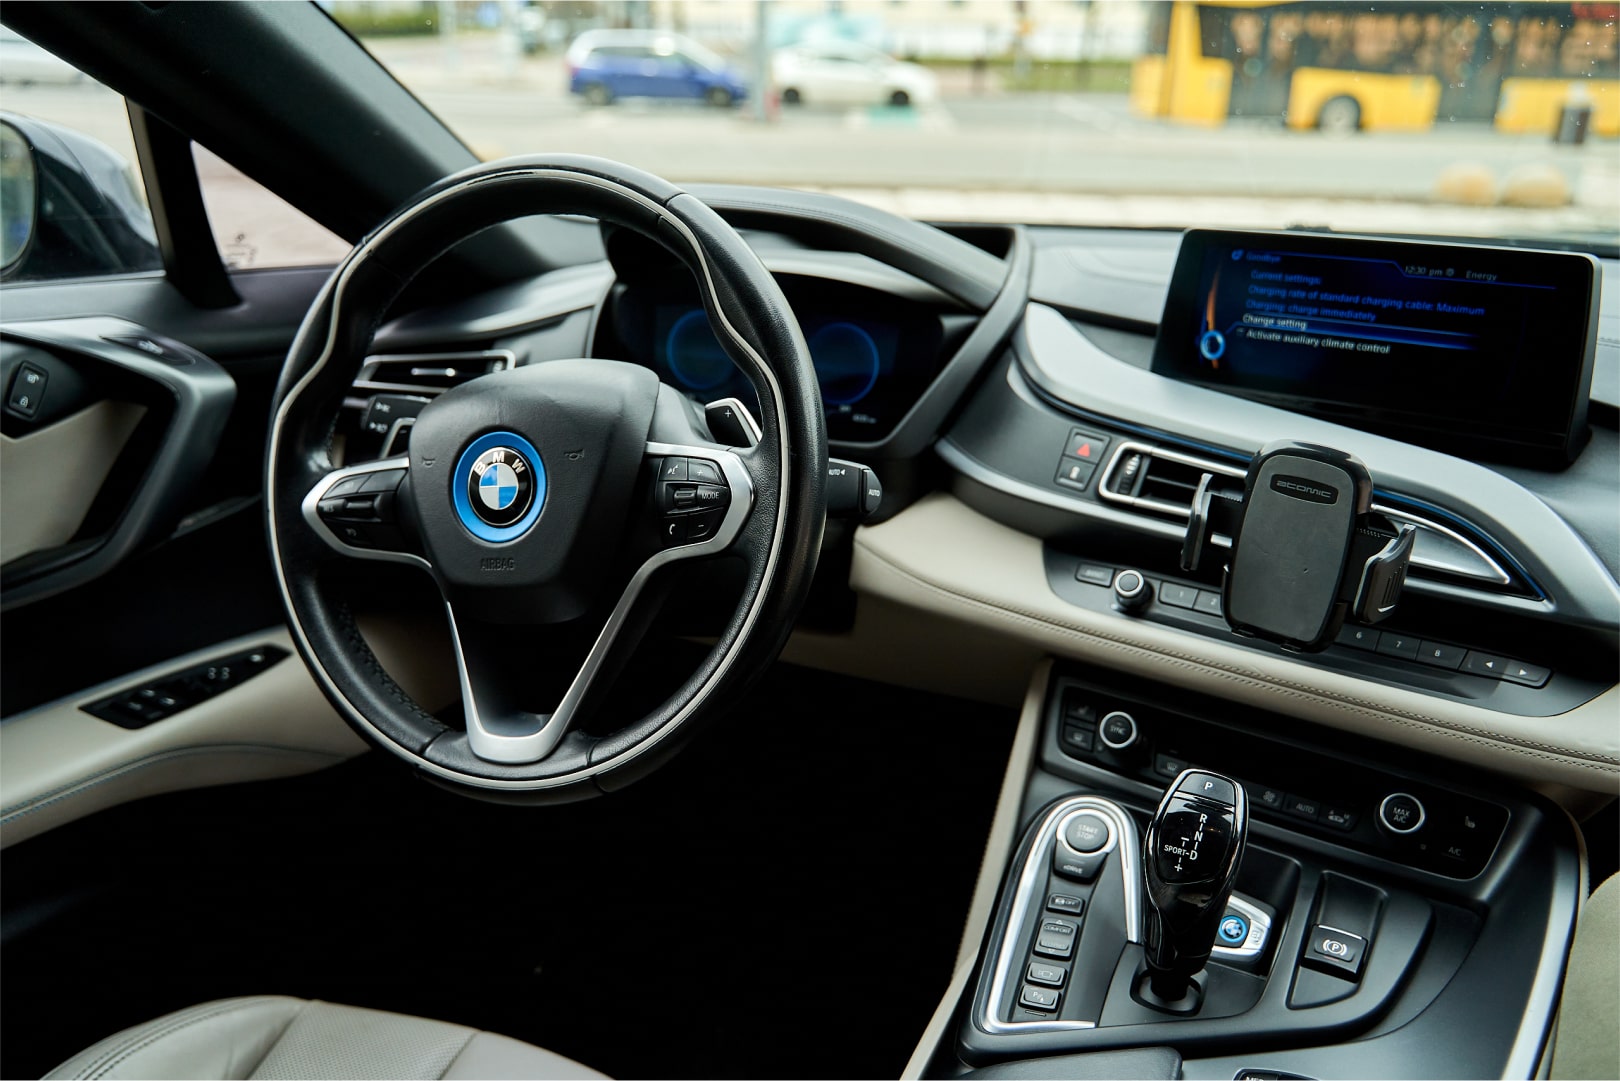 Аренда  BMW i8 (I12) купе  4 класса 2017 года в городе Минск от 260 $/сутки,  двигатель: Электро , объем 1.5 + 105 KW литров, КАСКО (Мультидрайв), без водителя, вид 3 - West Group